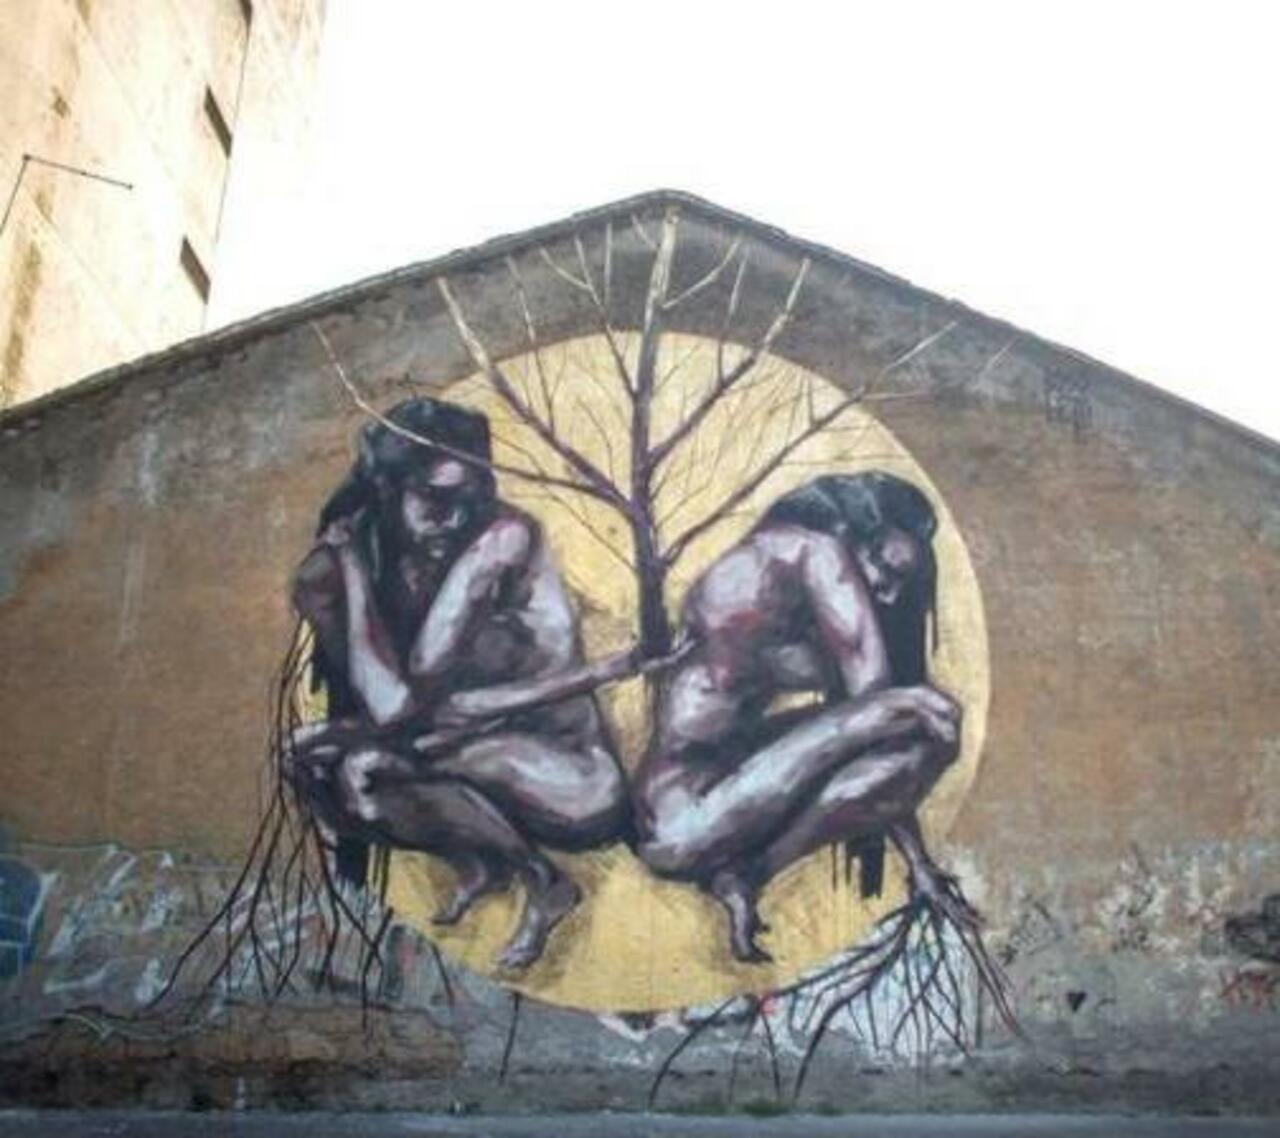 #art #streetart #graffiti 
#FranBosoletti http://t.co/MUWVz1P4dN